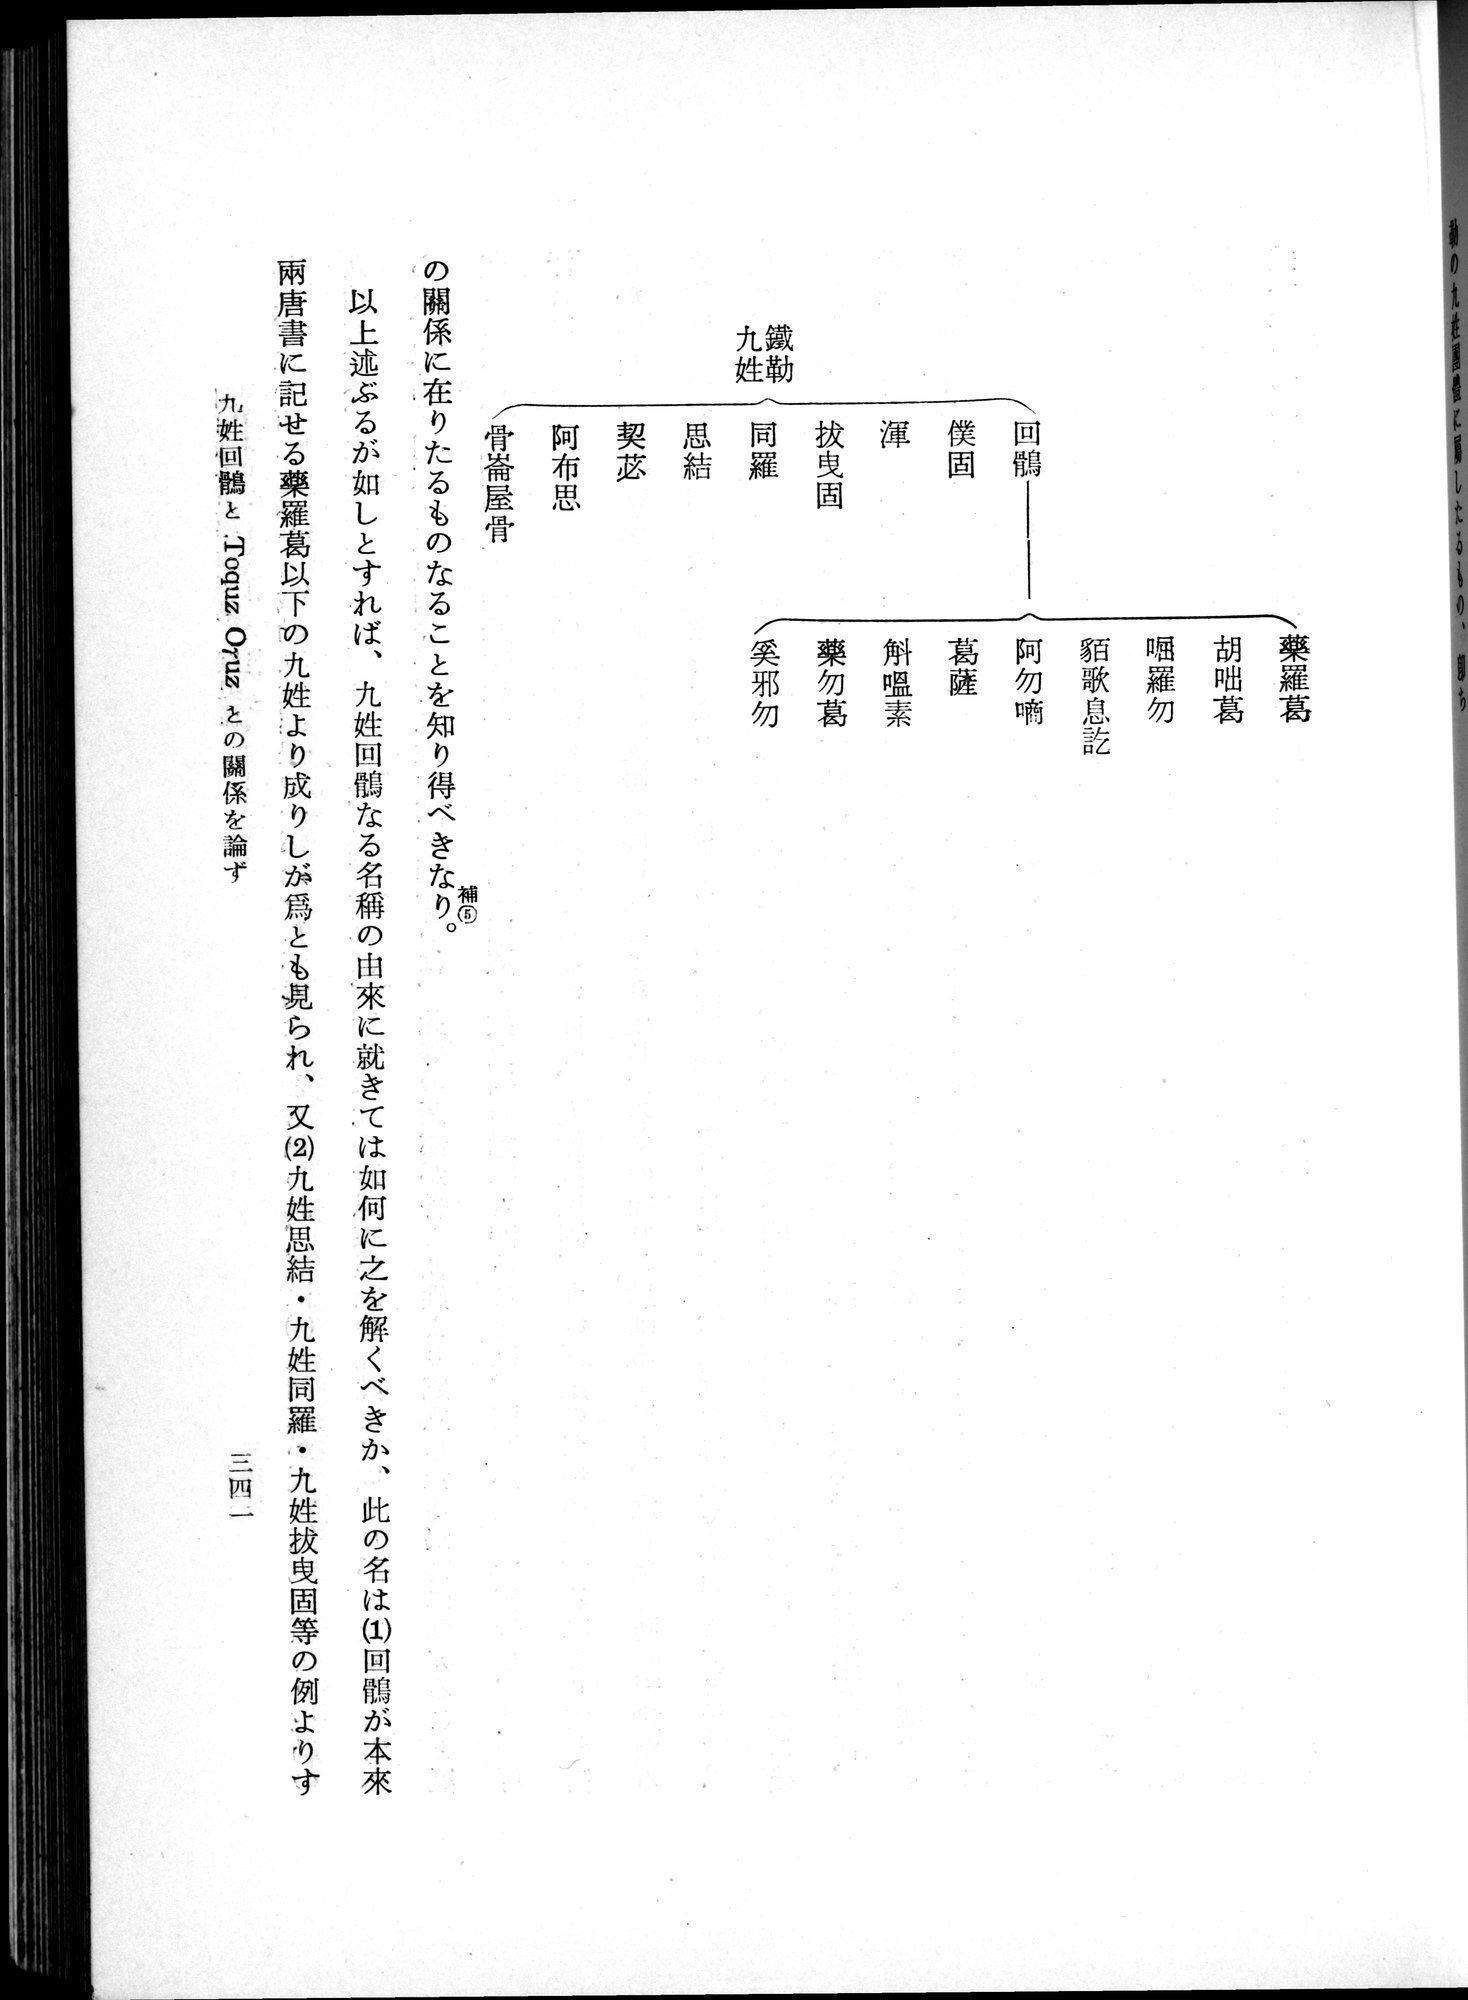 羽田博士史学論文集 : vol.1 / 379 ページ（白黒高解像度画像）